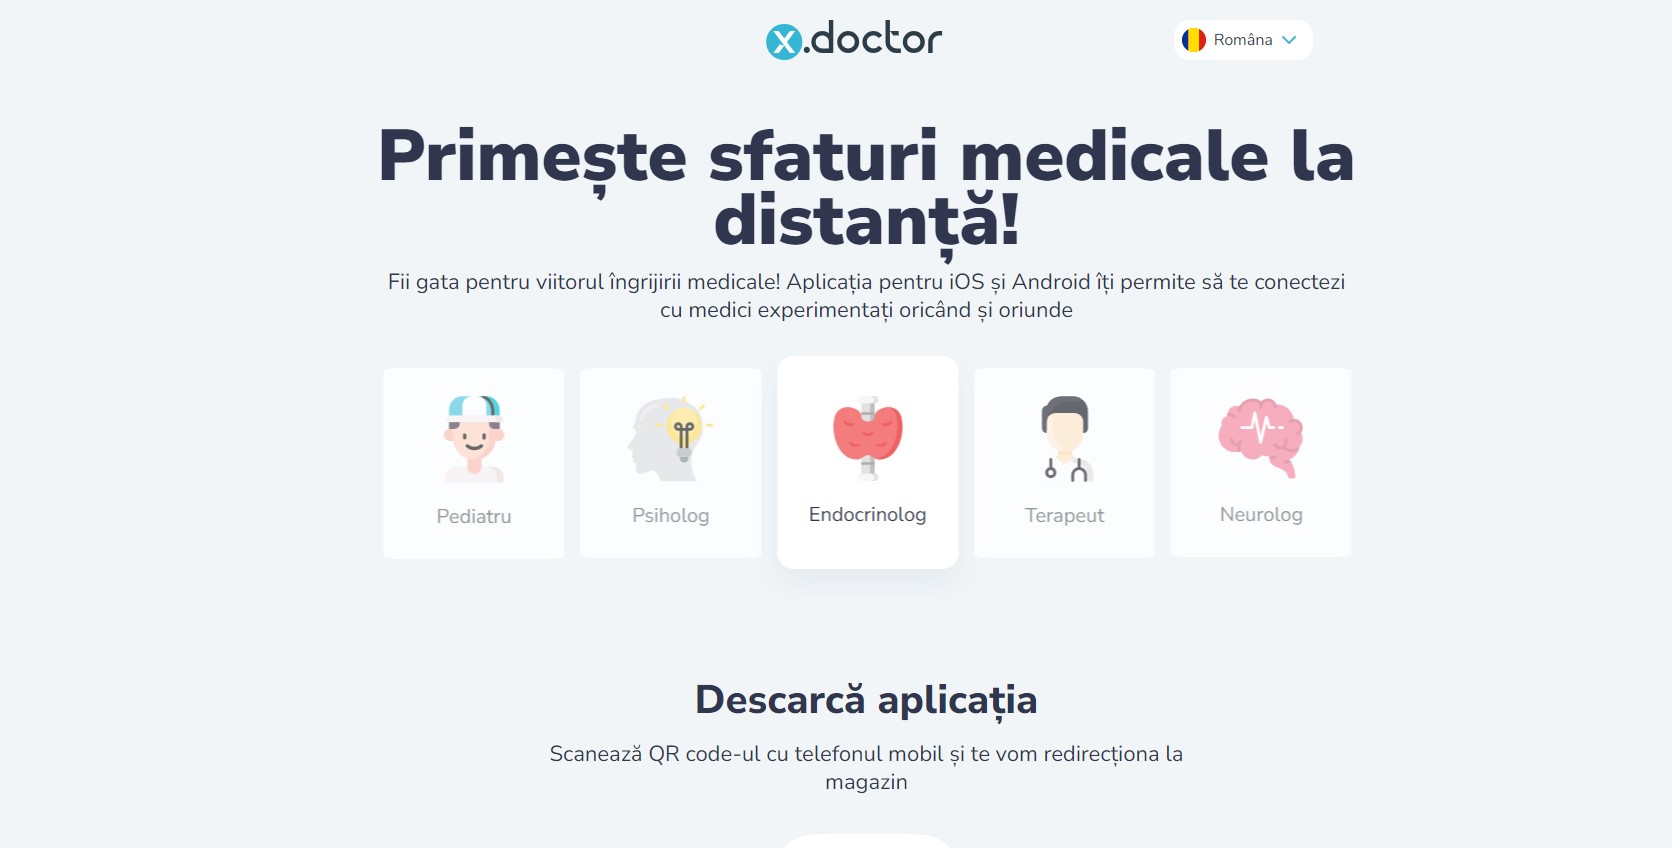 x.doctor - prima platformă online din țară oferă sfaturi medicale non-stop, simplificând procesul și reducând costurile